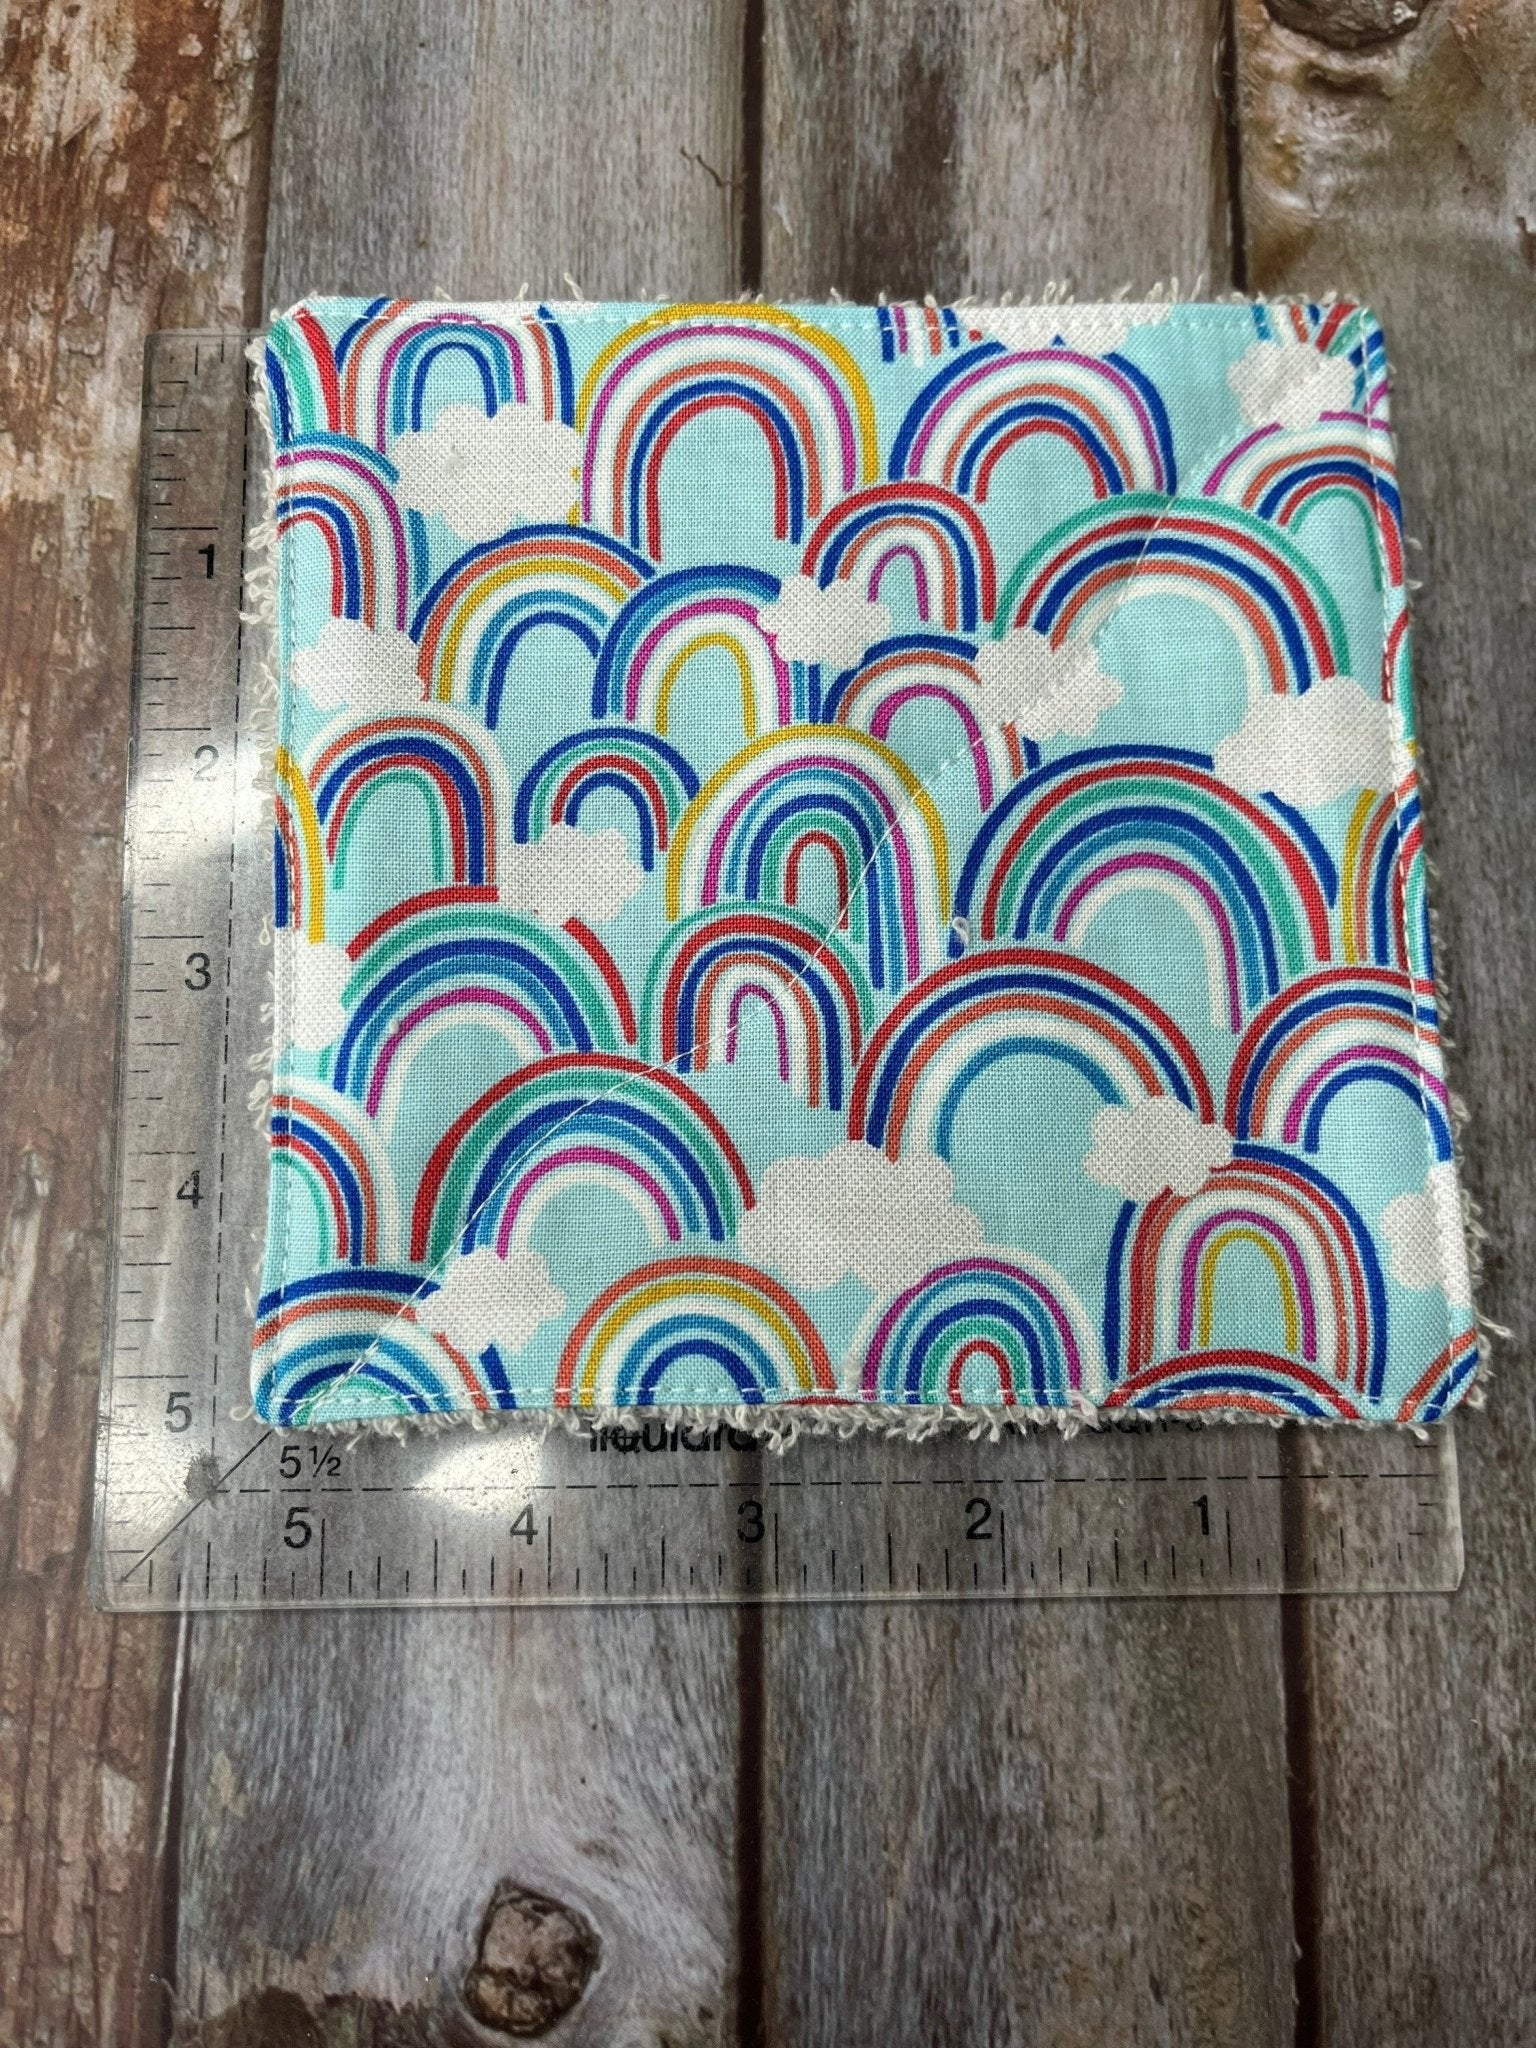 Rainbow Reusable Cotton Pads, Reusable Make Up Wipes, Reusable Cotton Baby Wipes, Rainbow Gift - Uphouse Crafts